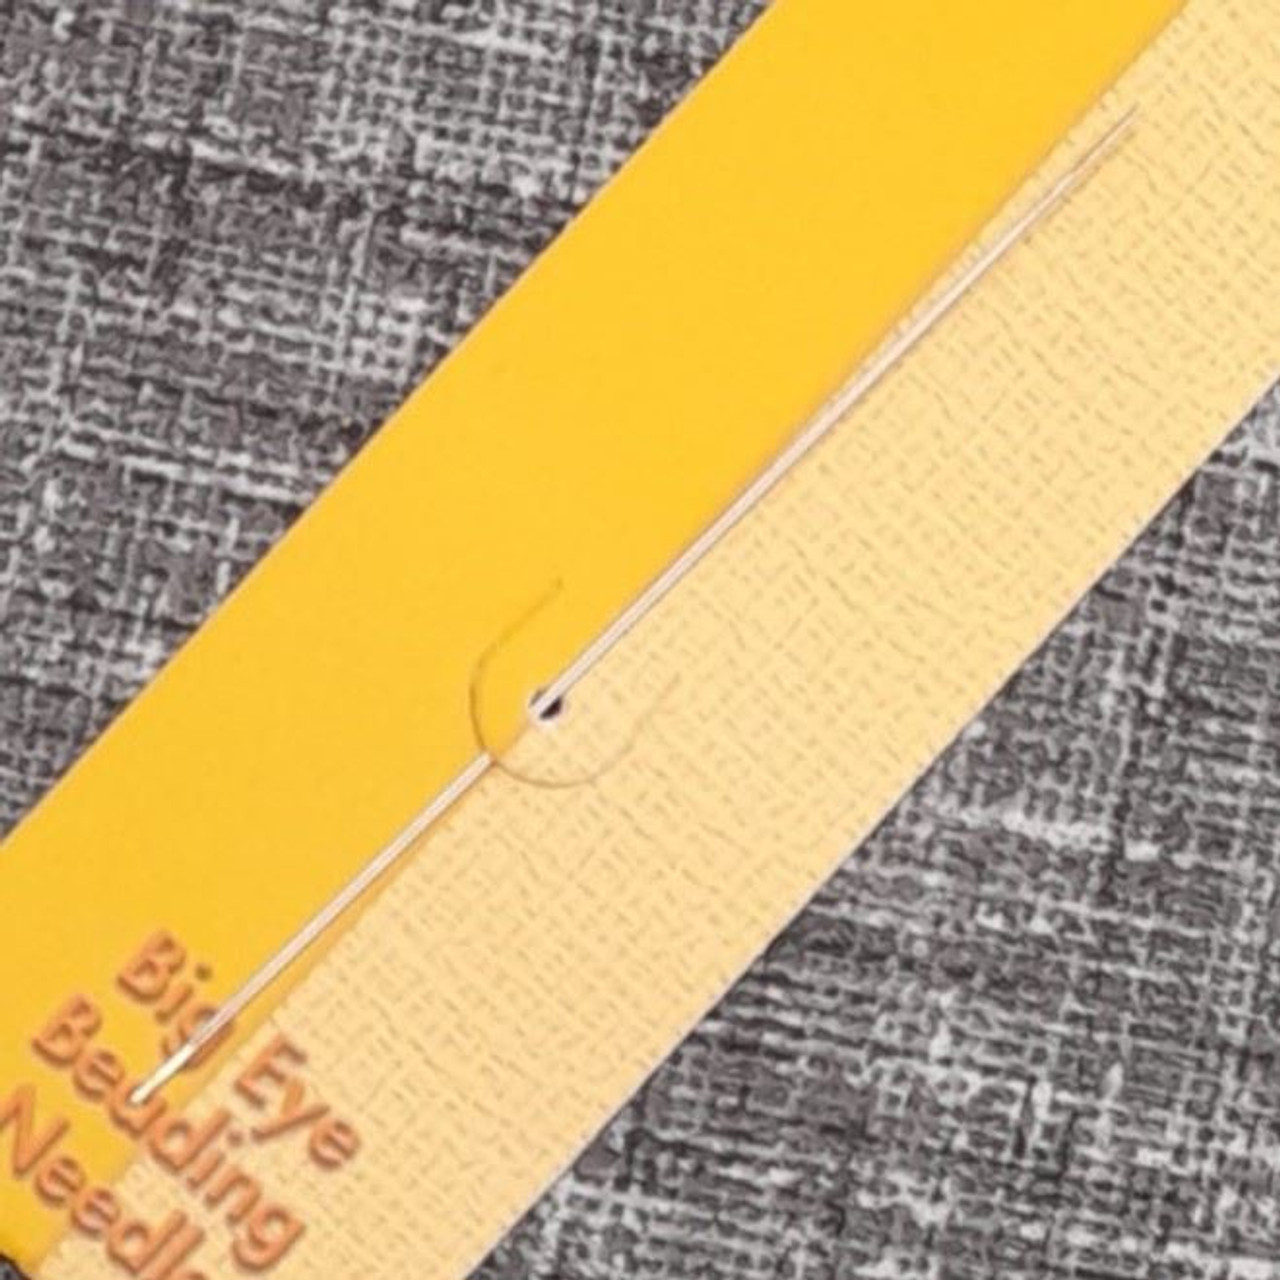 Beadsmith 57mm (2.125 inch) Big eye beading needle